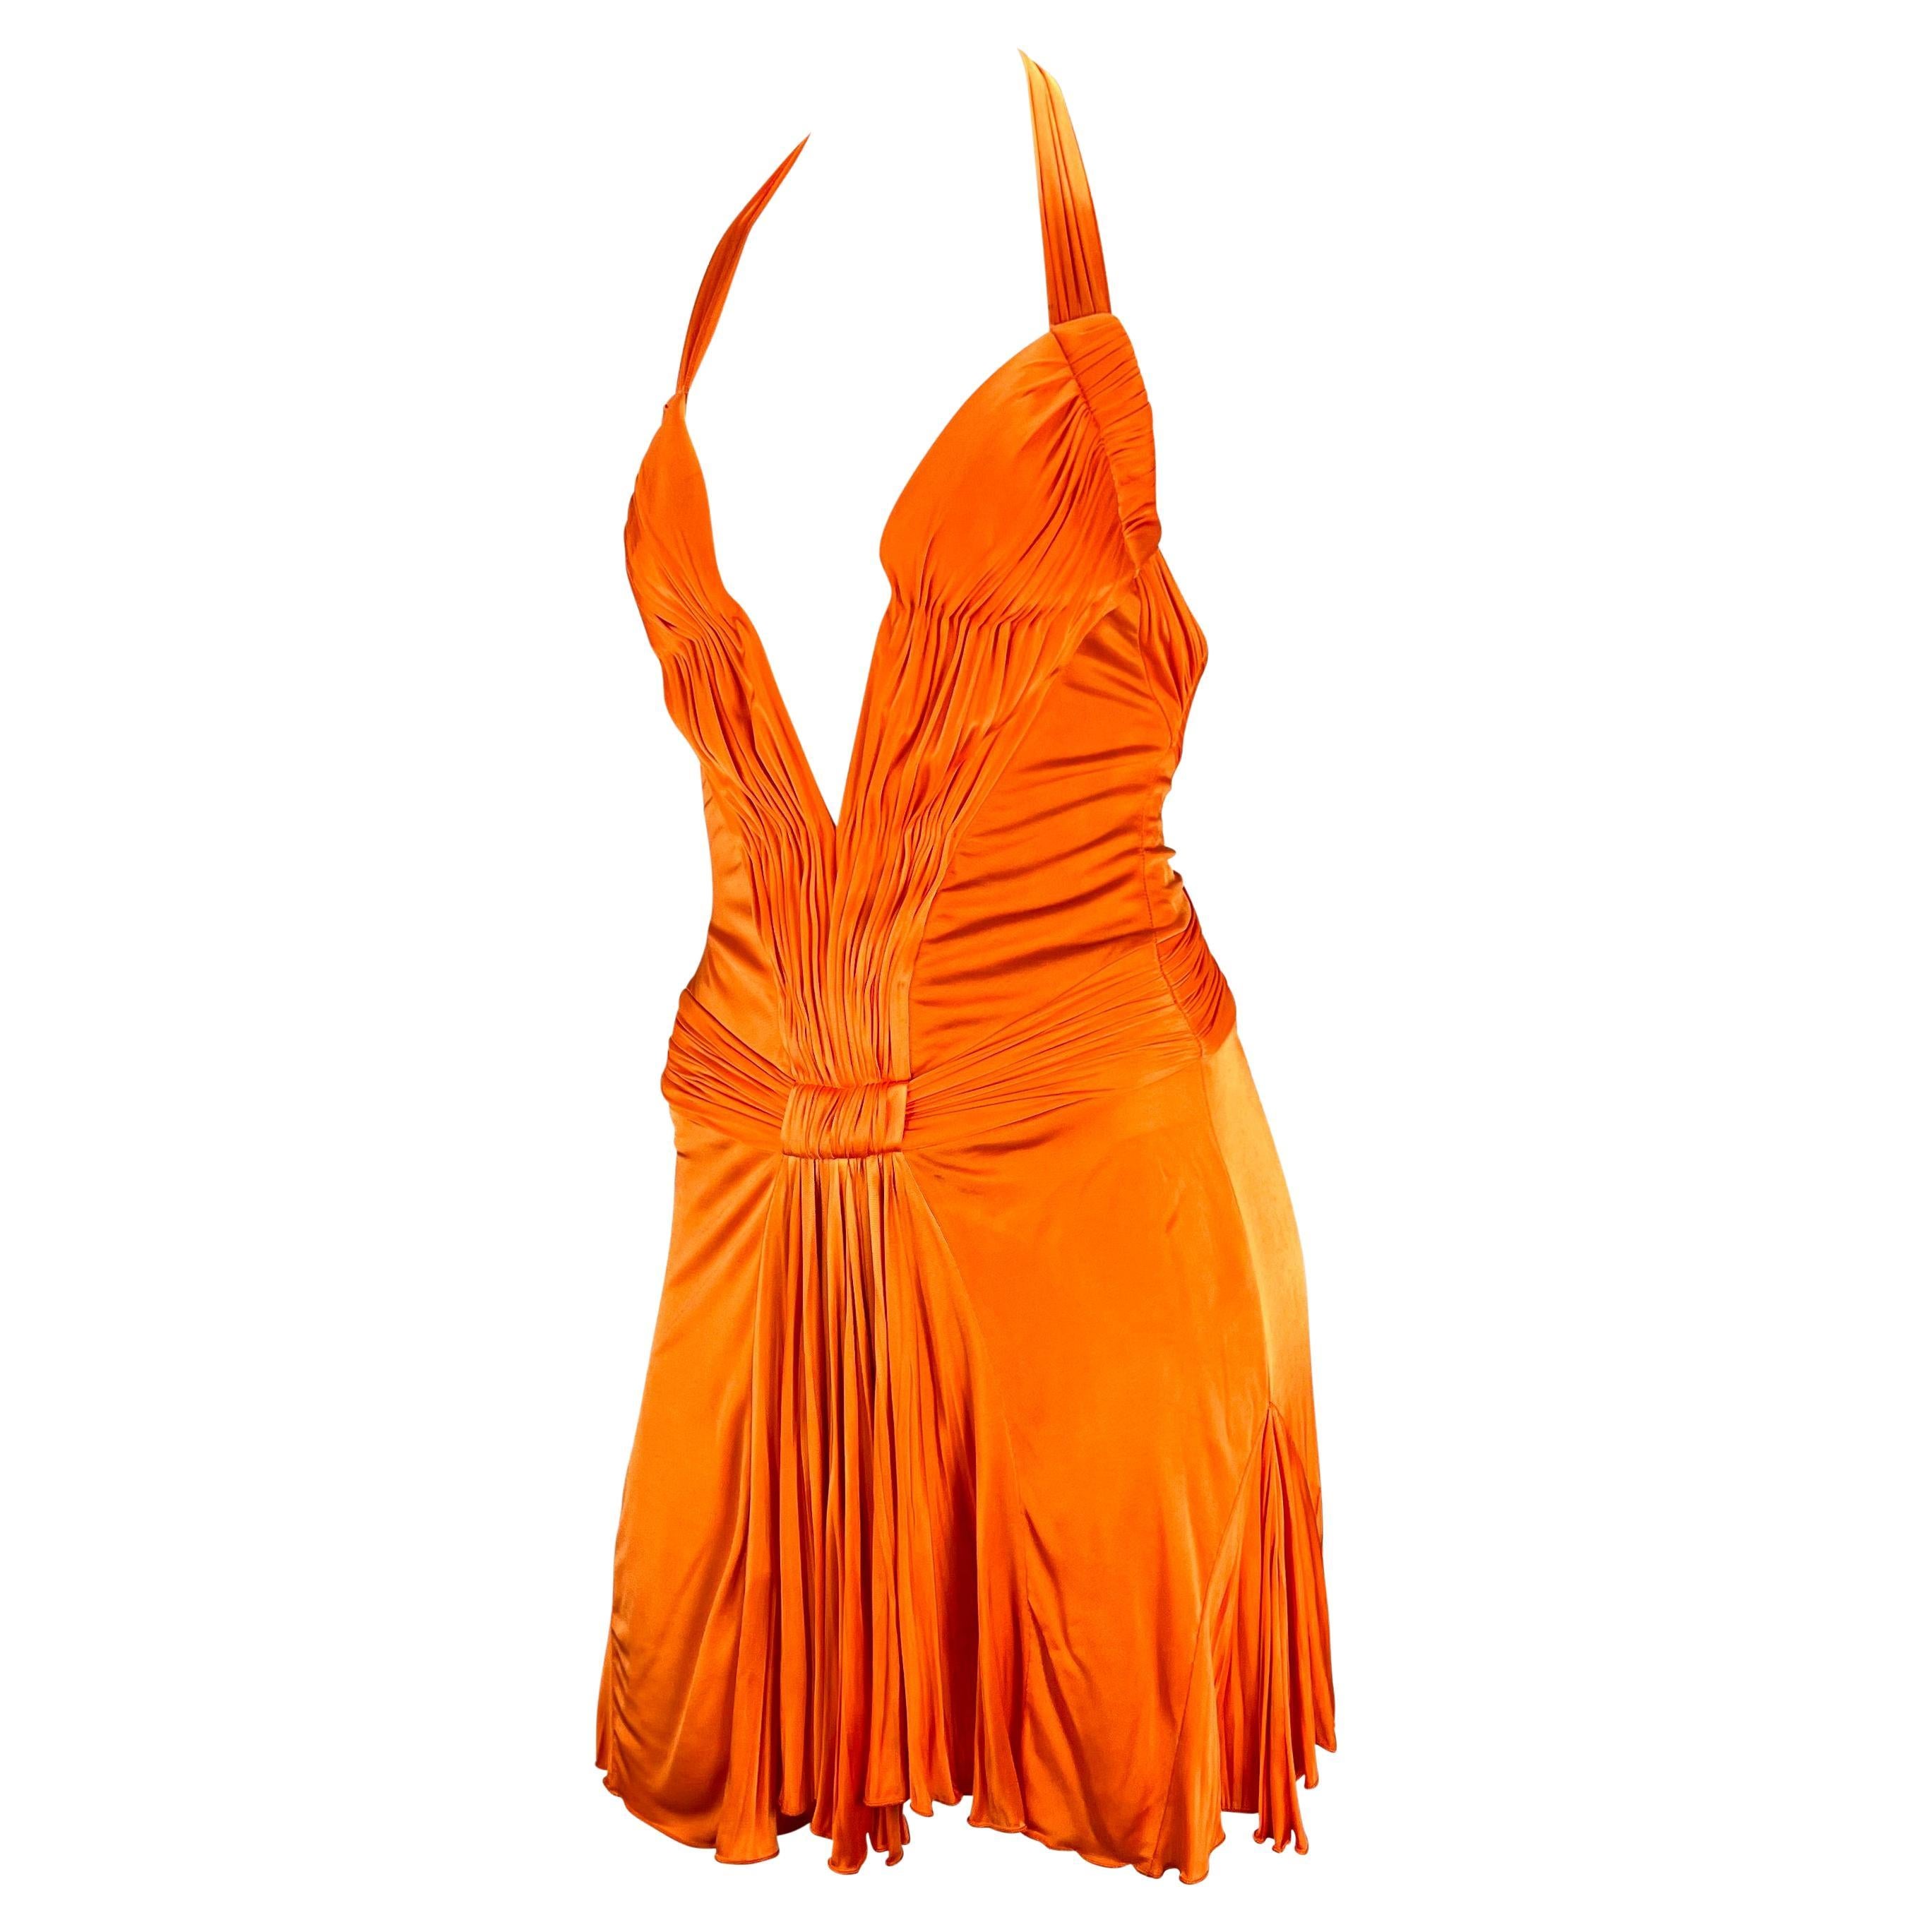 Sie präsentiert ein leuchtend orangefarbenes, tief ausgeschnittenes Minikleid von Roberto Cavalli. Dieses schöne und lebhafte Kleid aus der Frühjahr/Sommer-Kollektion 2005 zeichnet sich durch einen tiefen Ausschnitt, einen halboffenen Rücken und